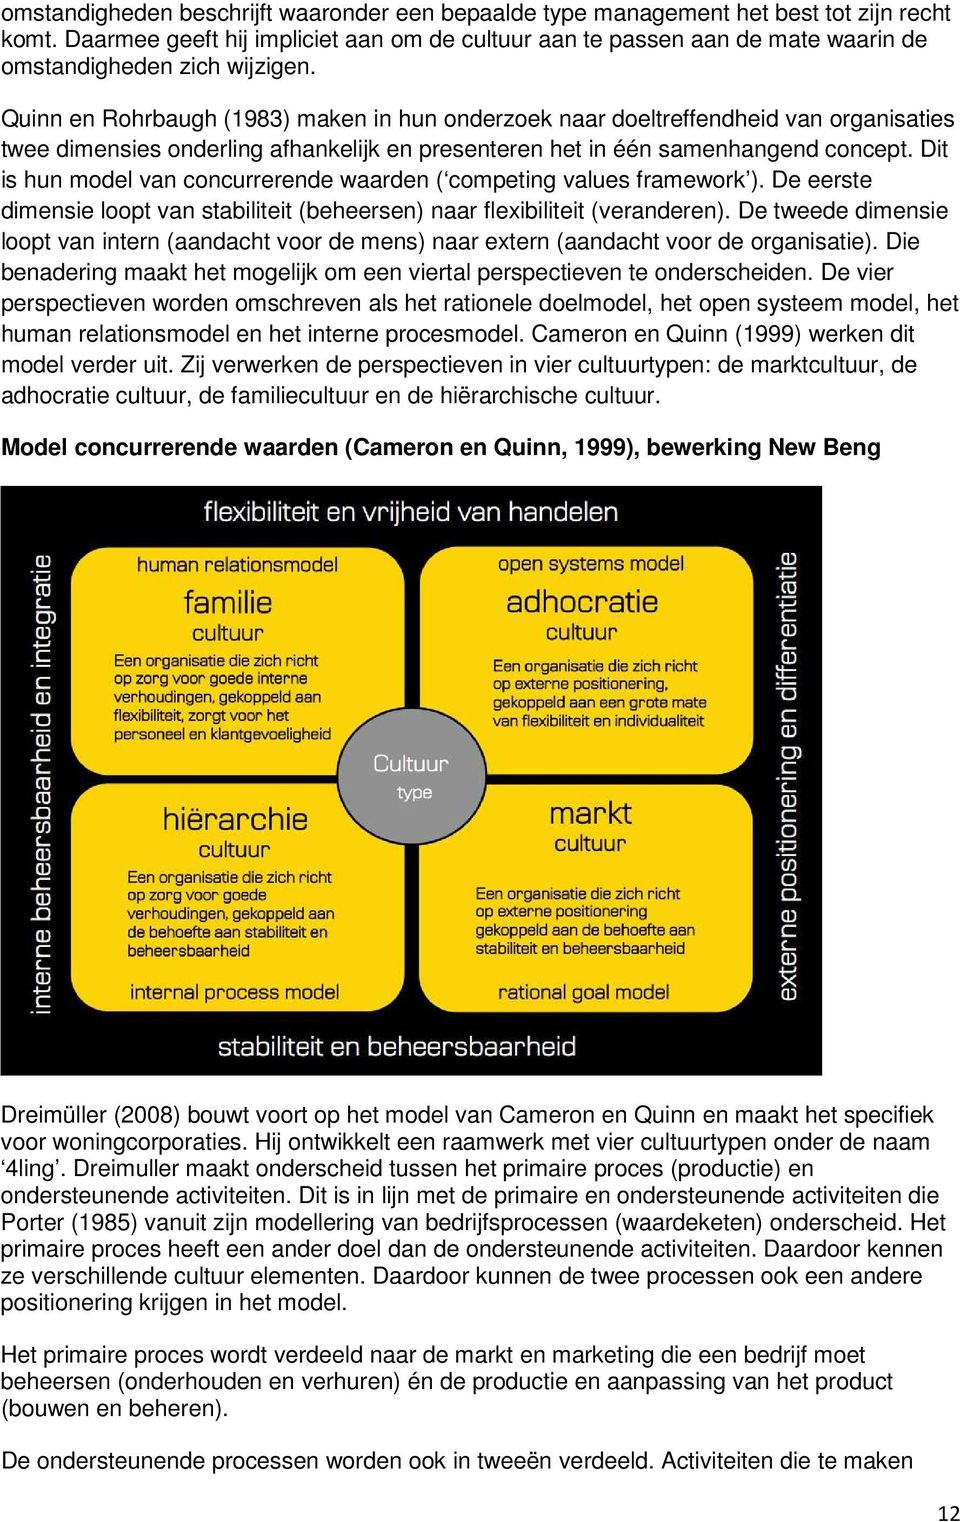 Quinn en Rohrbaugh (1983) maken in hun onderzoek naar doeltreffendheid van organisaties twee dimensies onderling afhankelijk en presenteren het in één samenhangend concept.